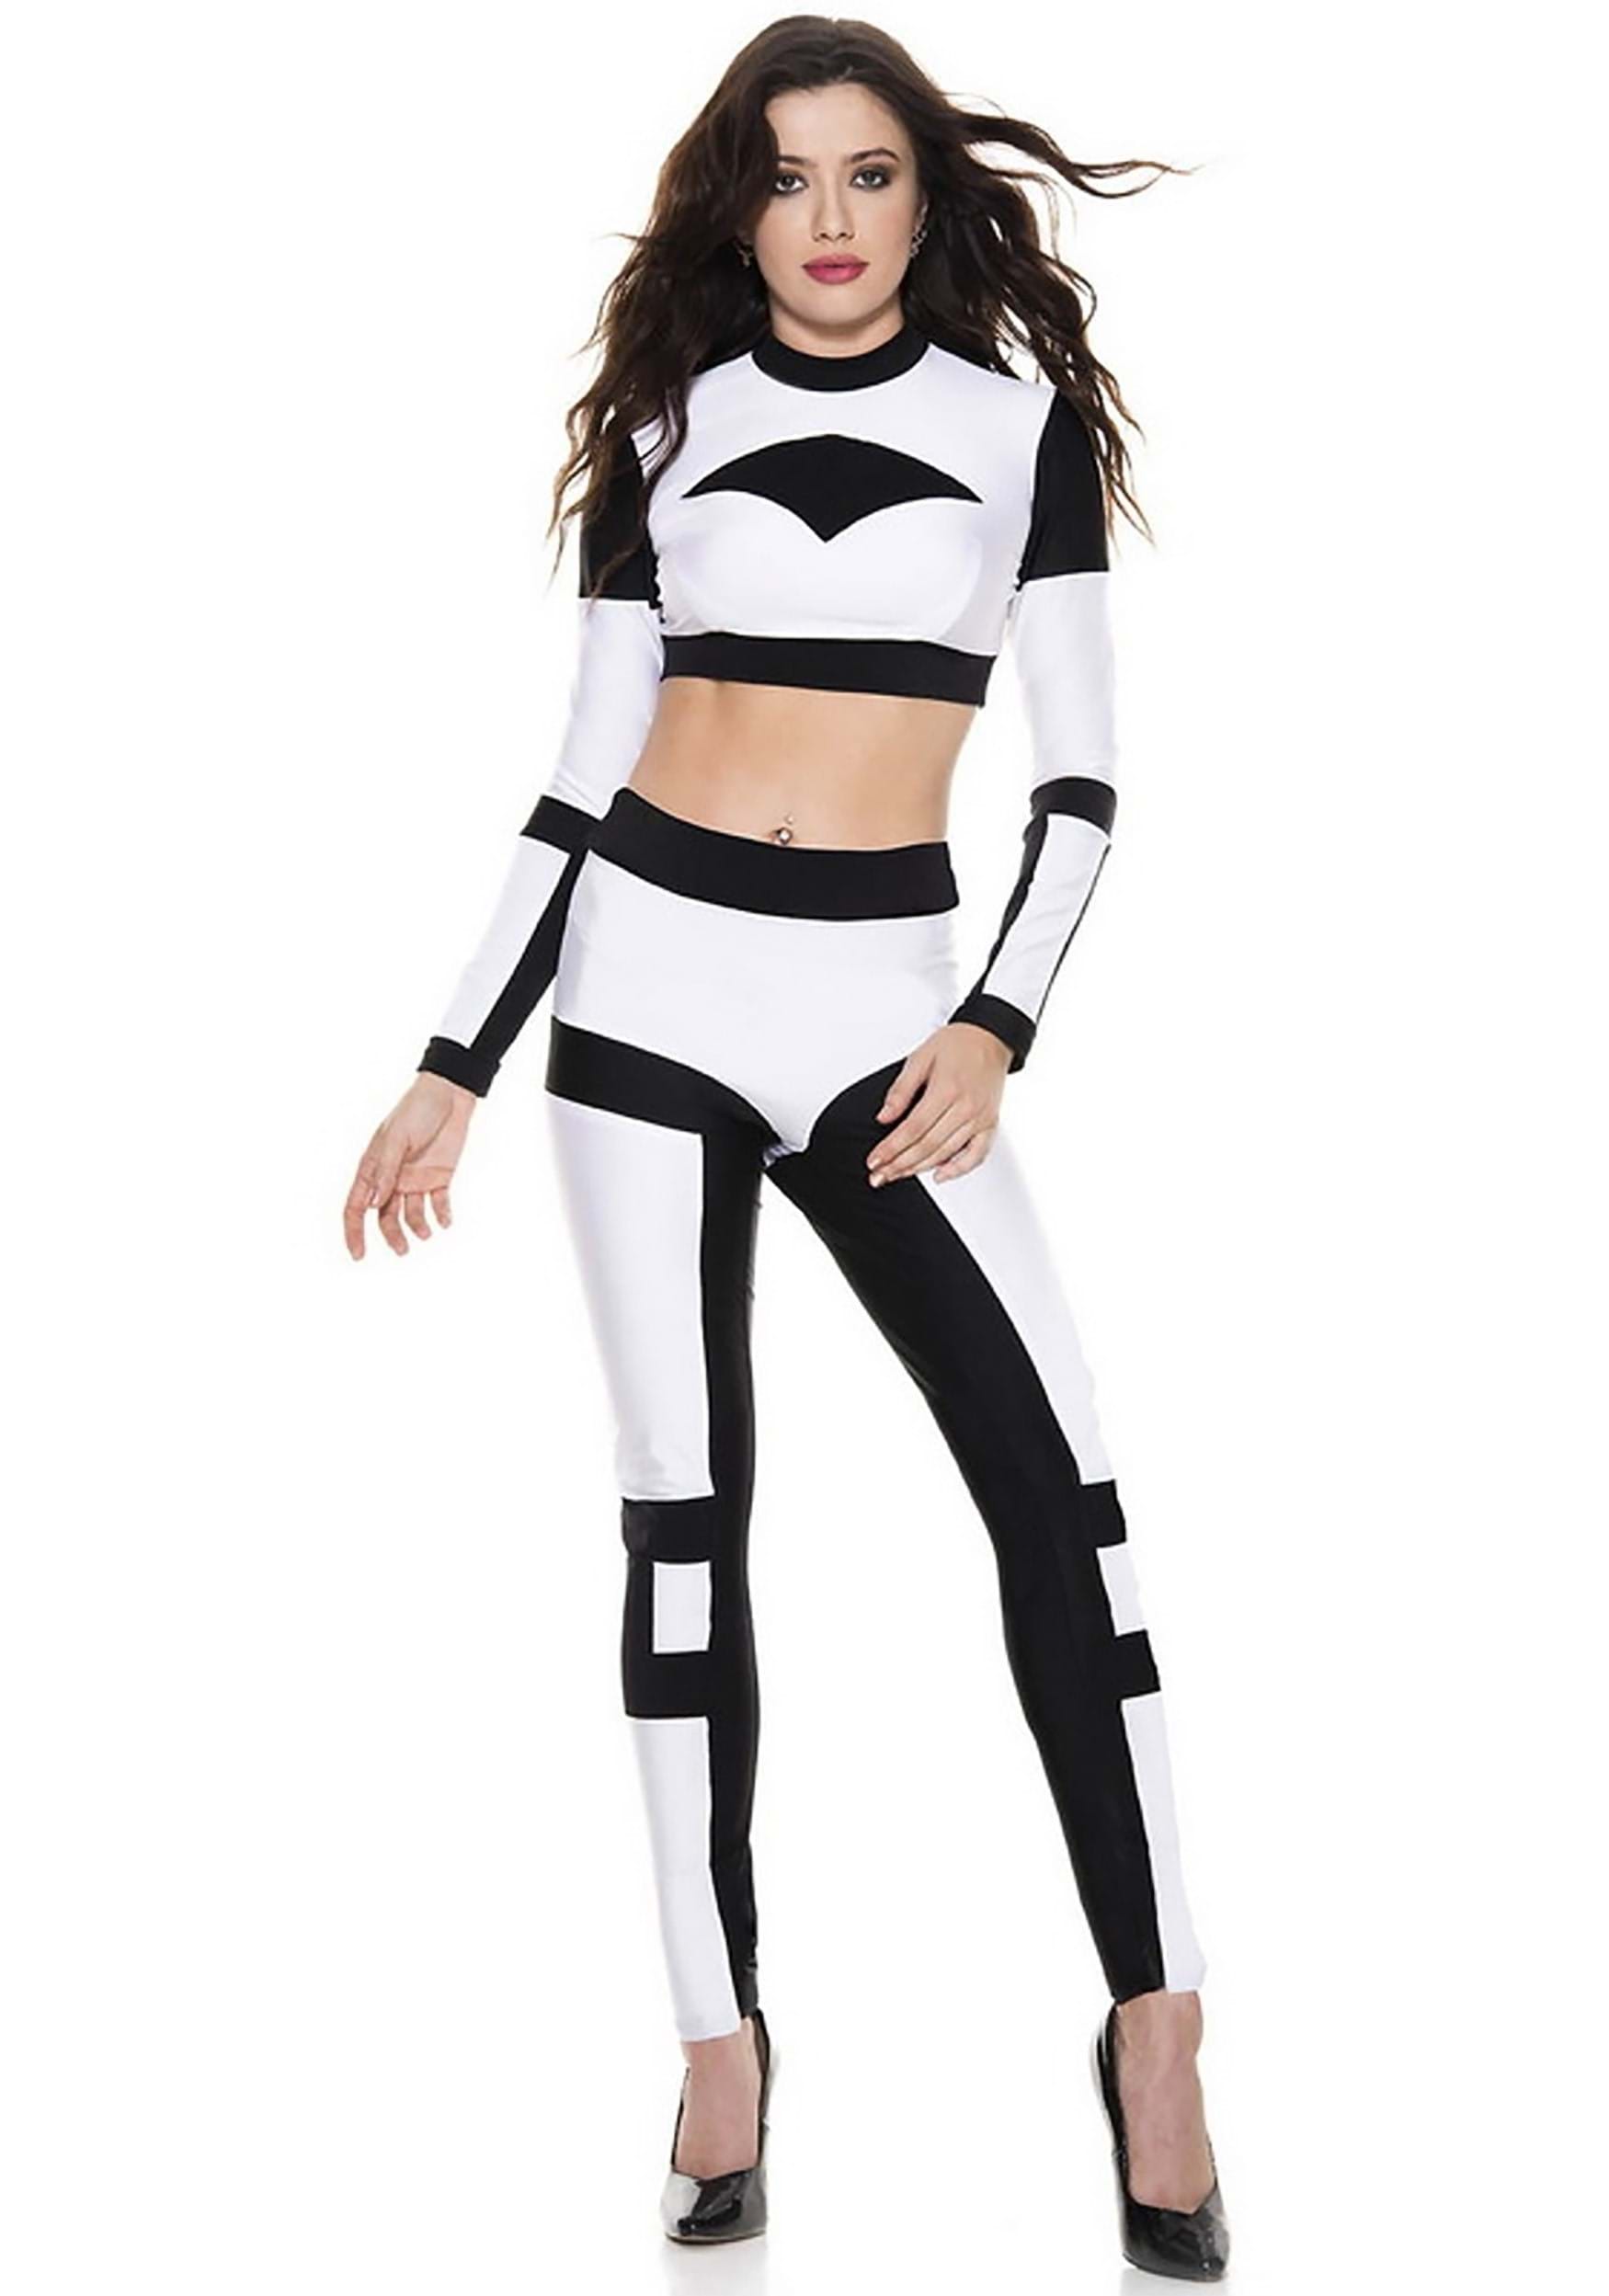 Women's Sexy White Galaxy Trooper Fancy Dress Costume